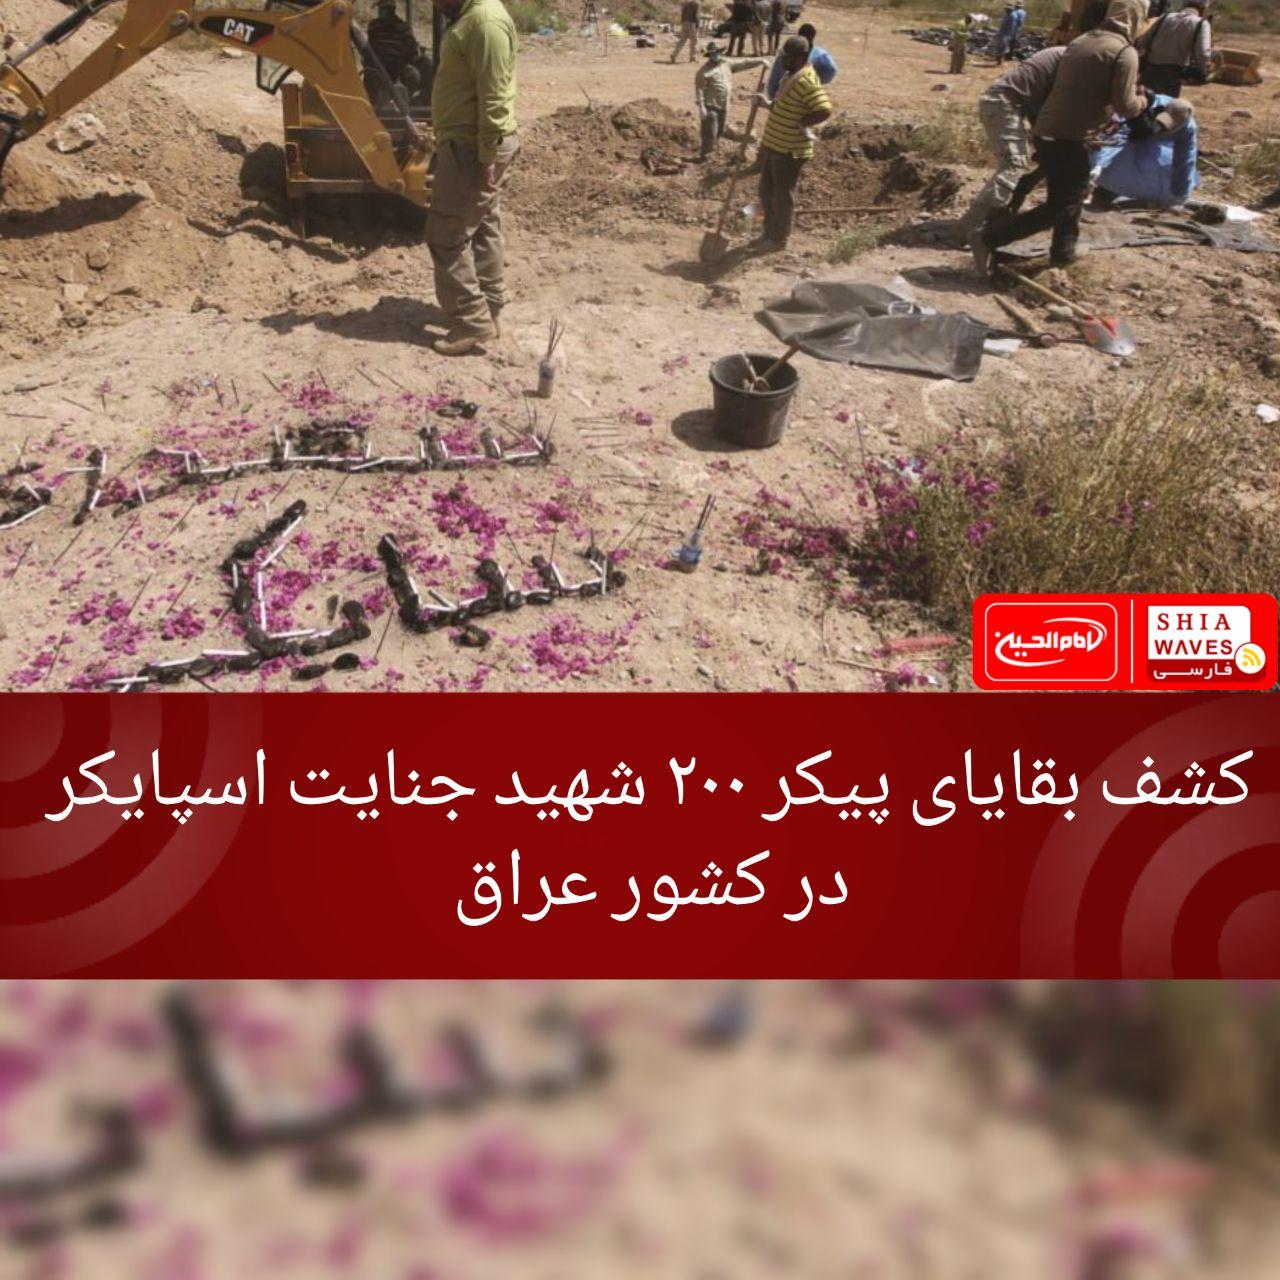 تصویر کشف بقایای پیکر ۲۰۰ شهید جنایت اسپایکر در کشور عراق